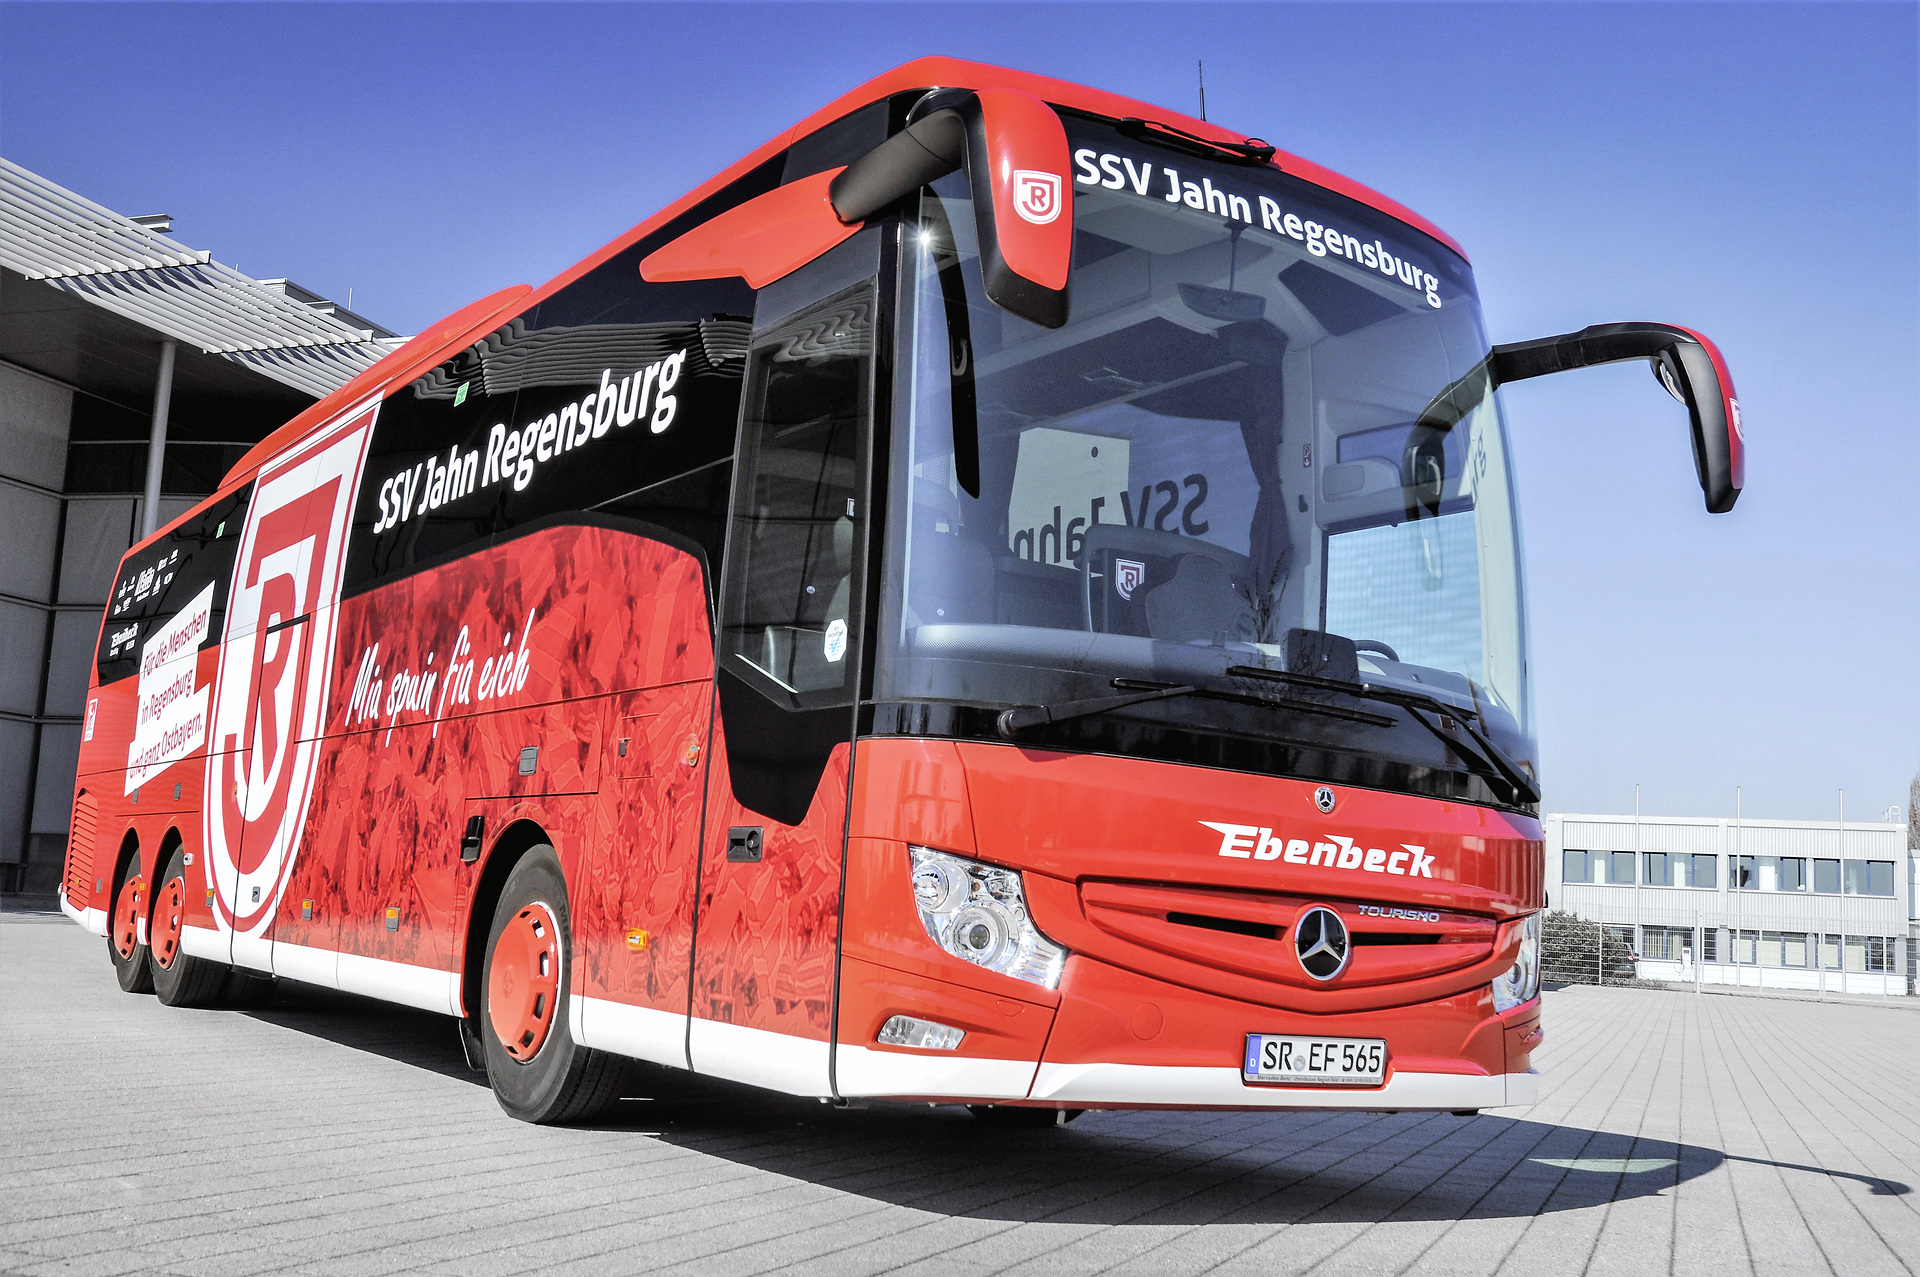 Neuer Teambus für SSV Jahn Regensburg